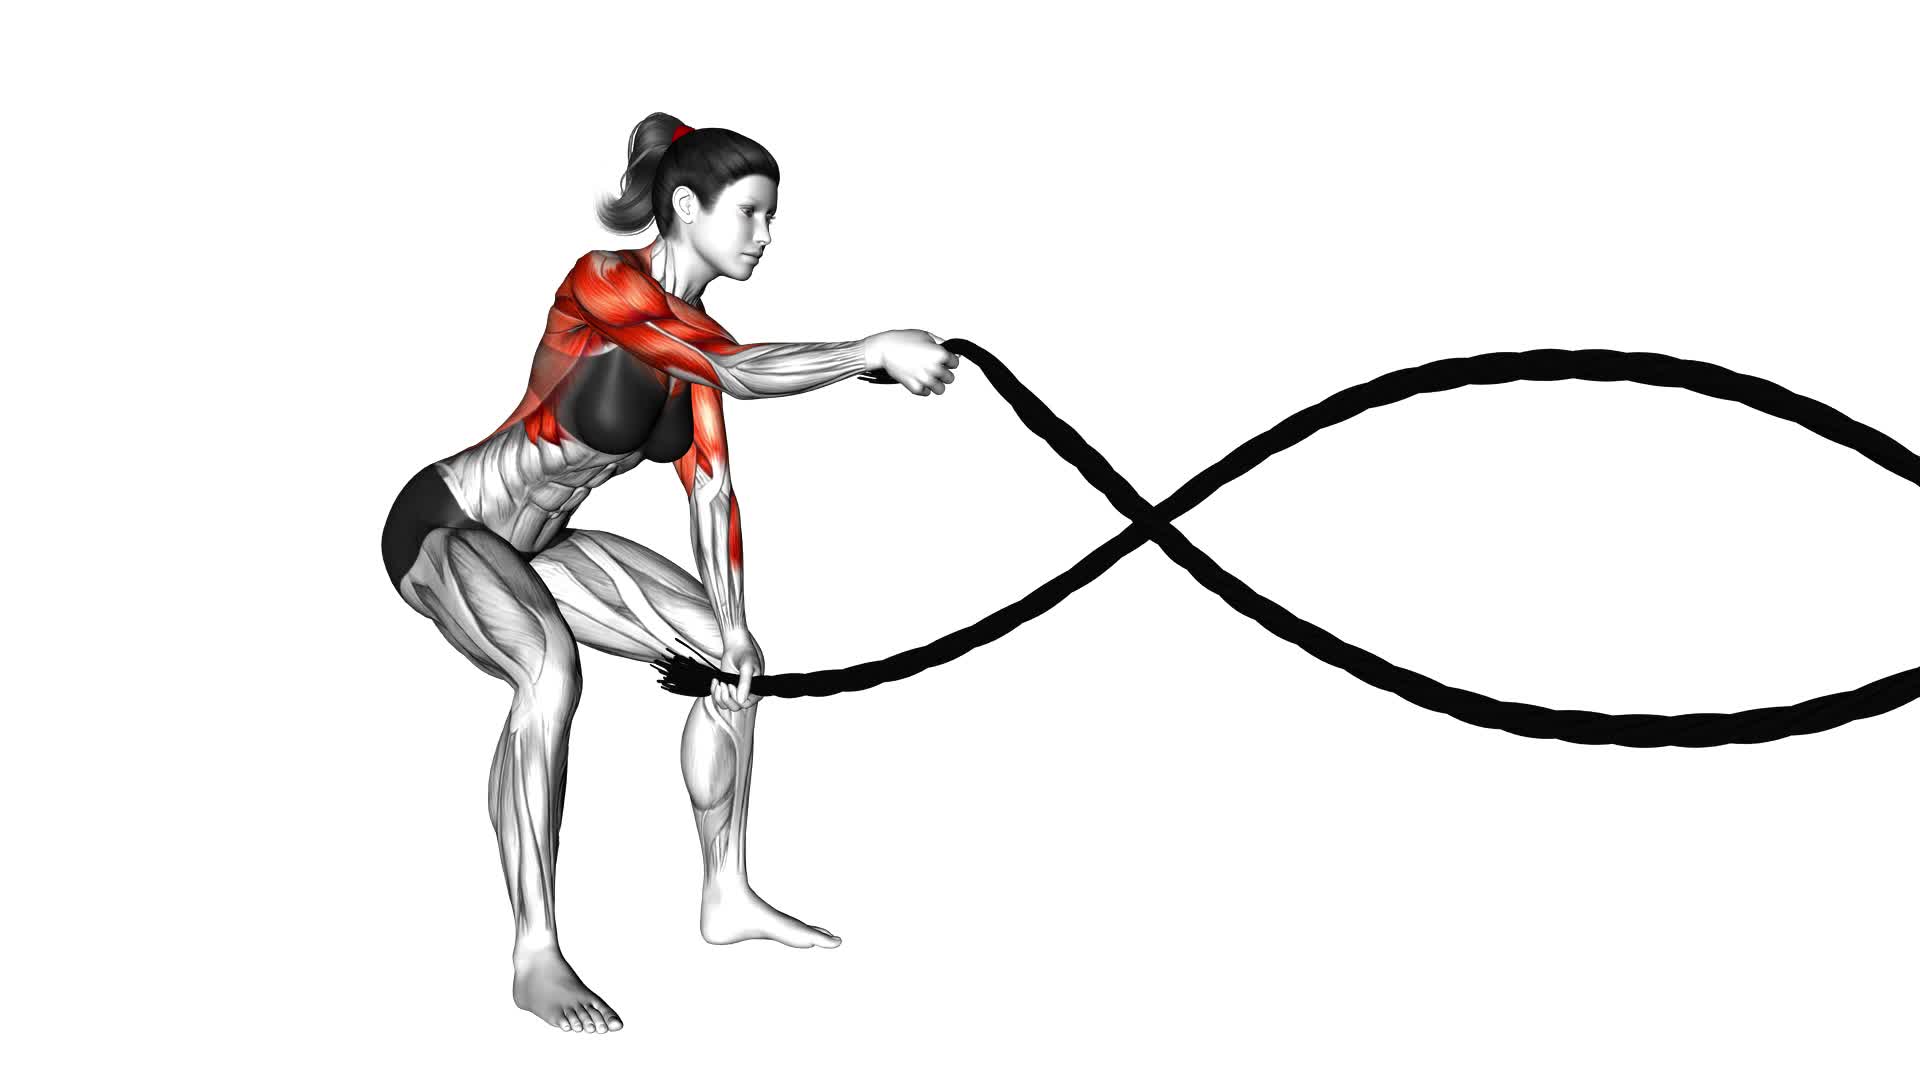 Battling Ropes (female) - Video Exercise Guide & Tips